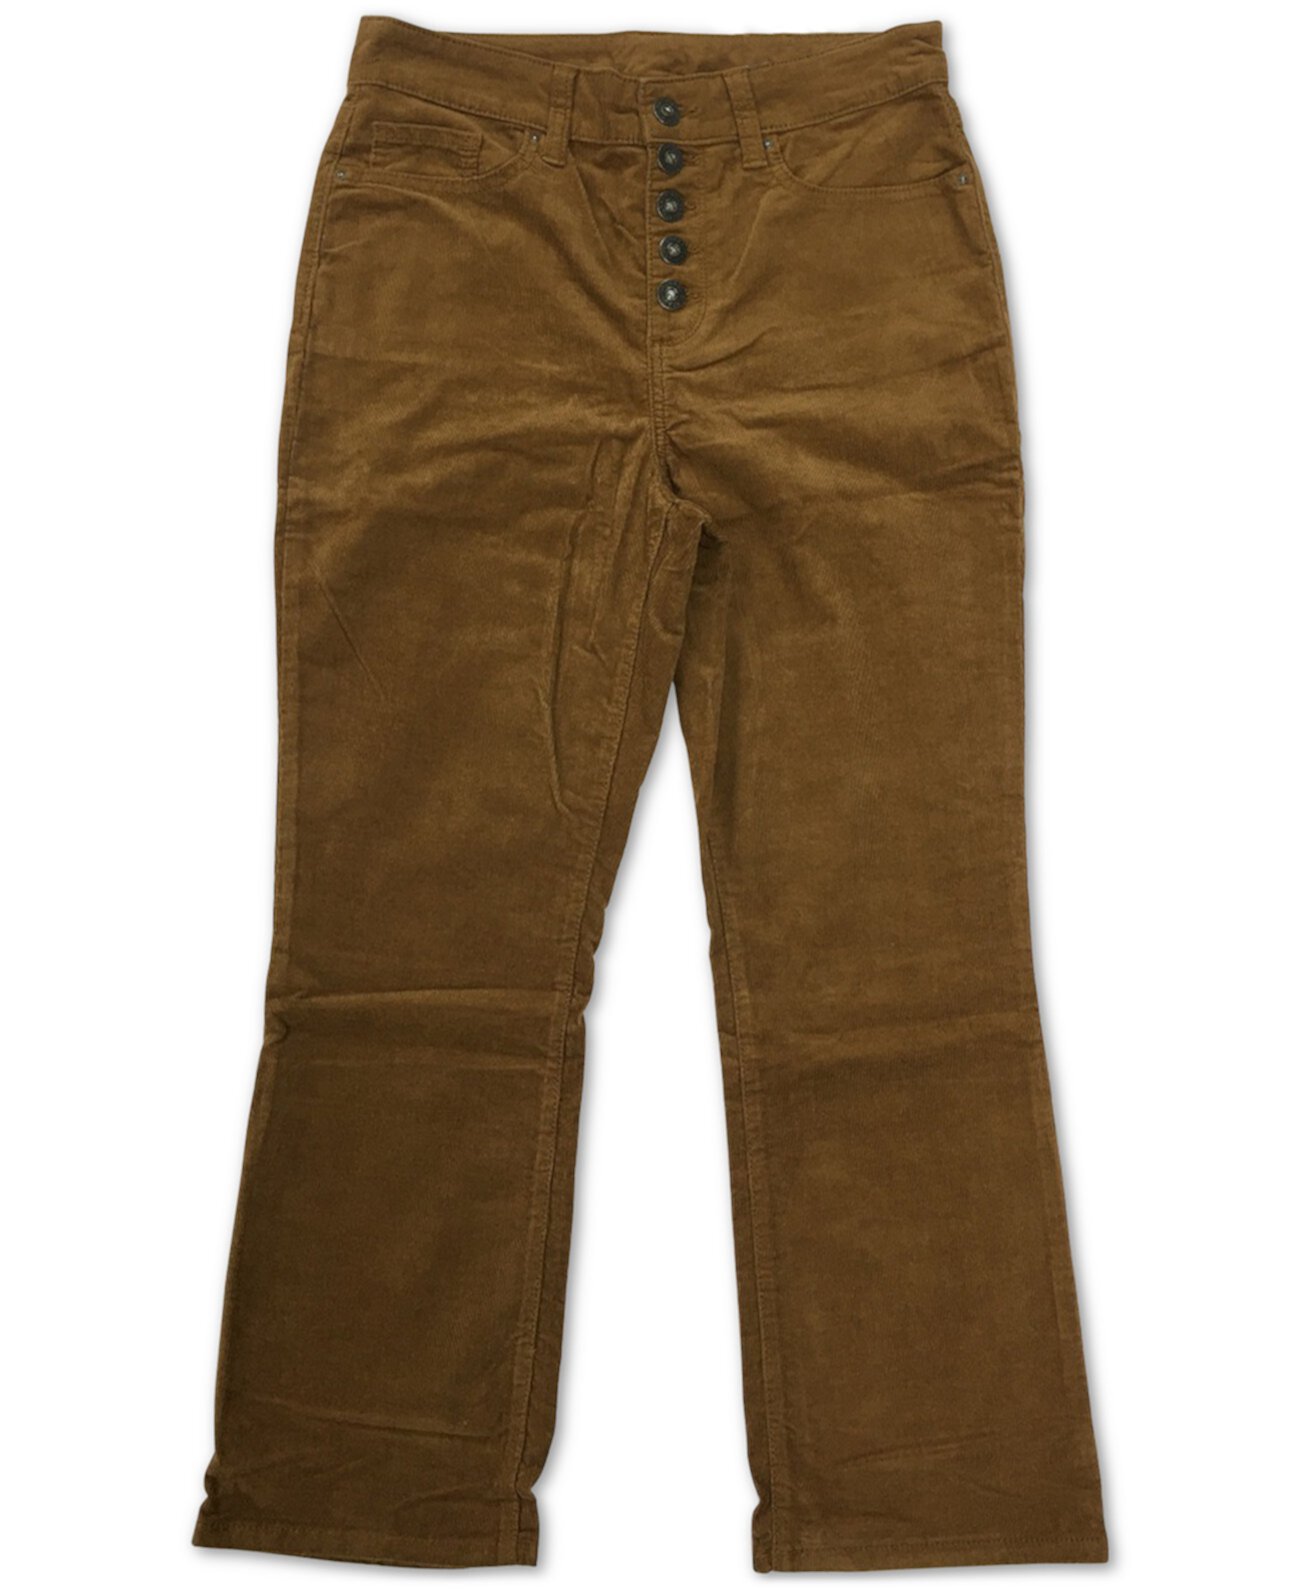 Вельветовые брюки больших размеров на пуговицах, созданные для Macy's Style & Co